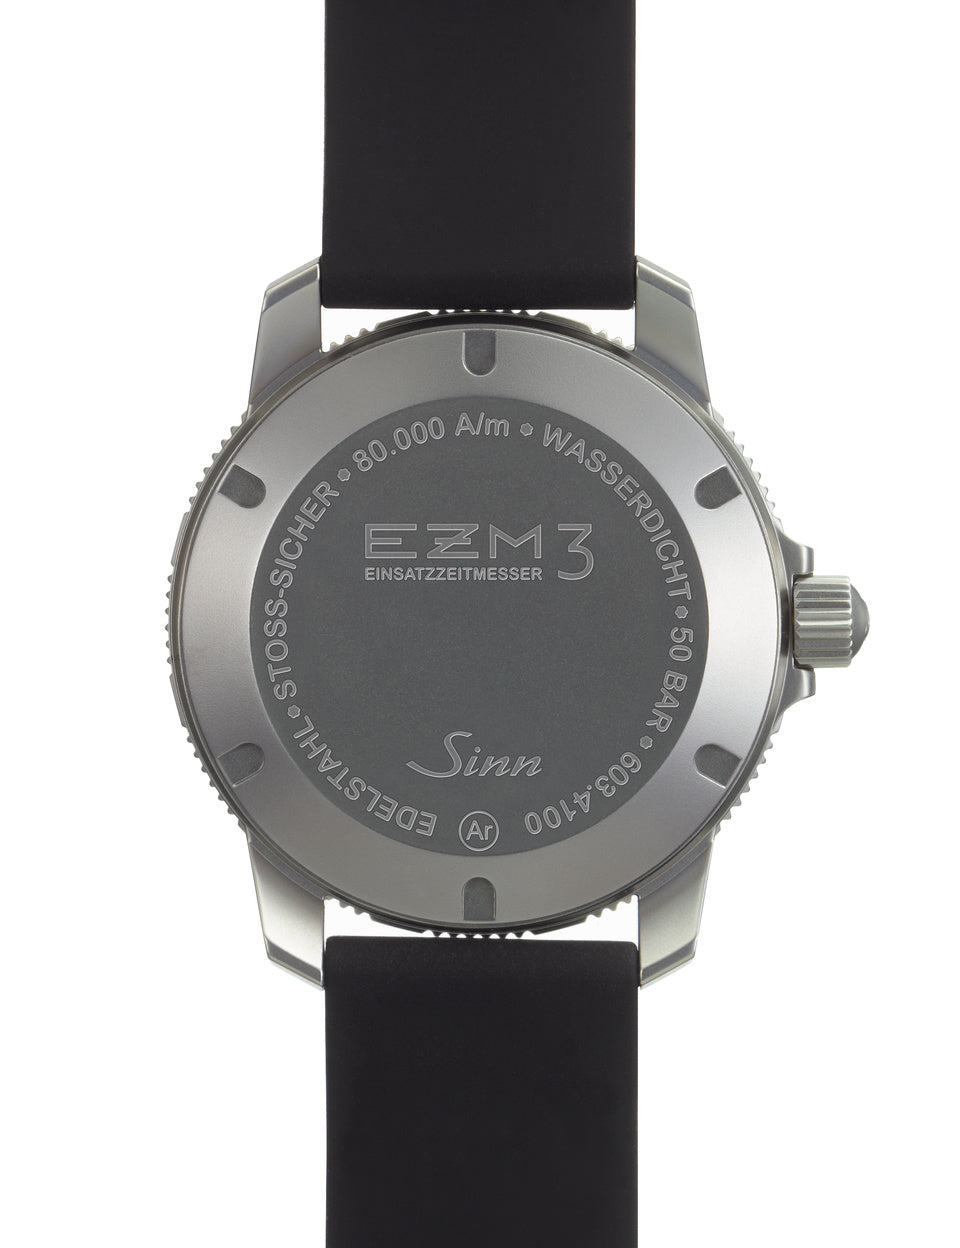 Sinn (ซินน์) นาฬิกาดำน้ำ EZM 3 สายสแตนเลสสตีล ขนาดตัวเรือน 41 มม. (EZM 3)